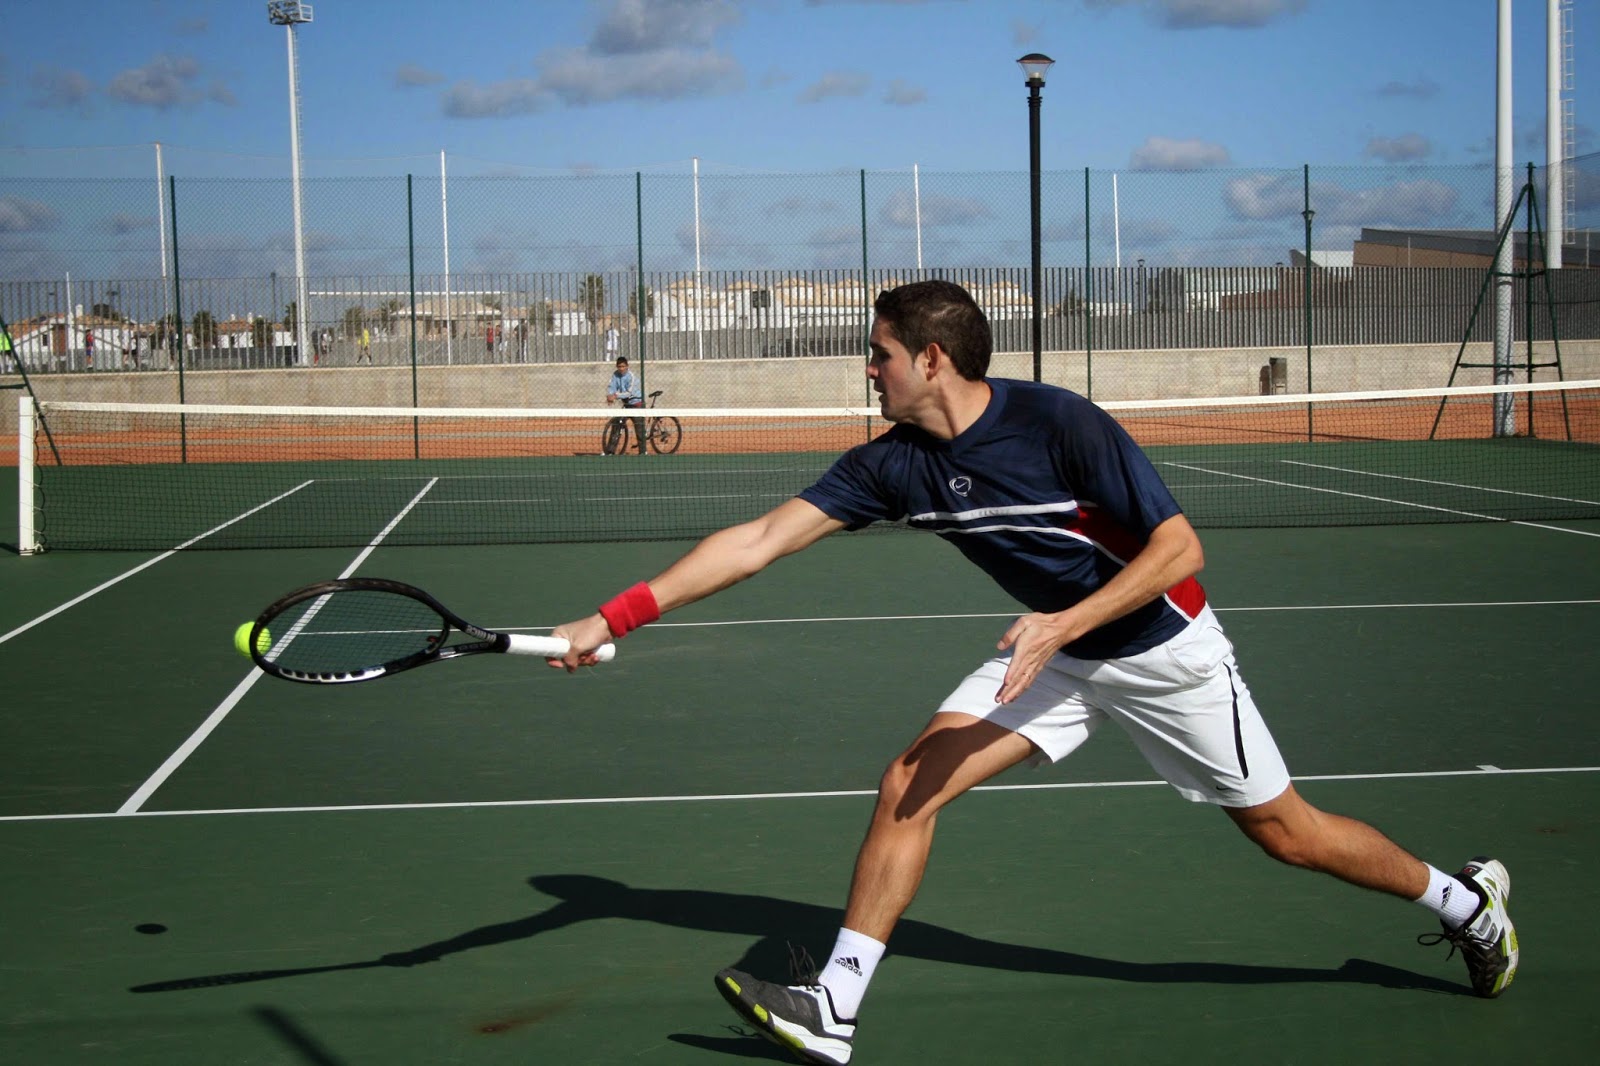 El tenis como ejercicio aeróbico además de un deporte divertido